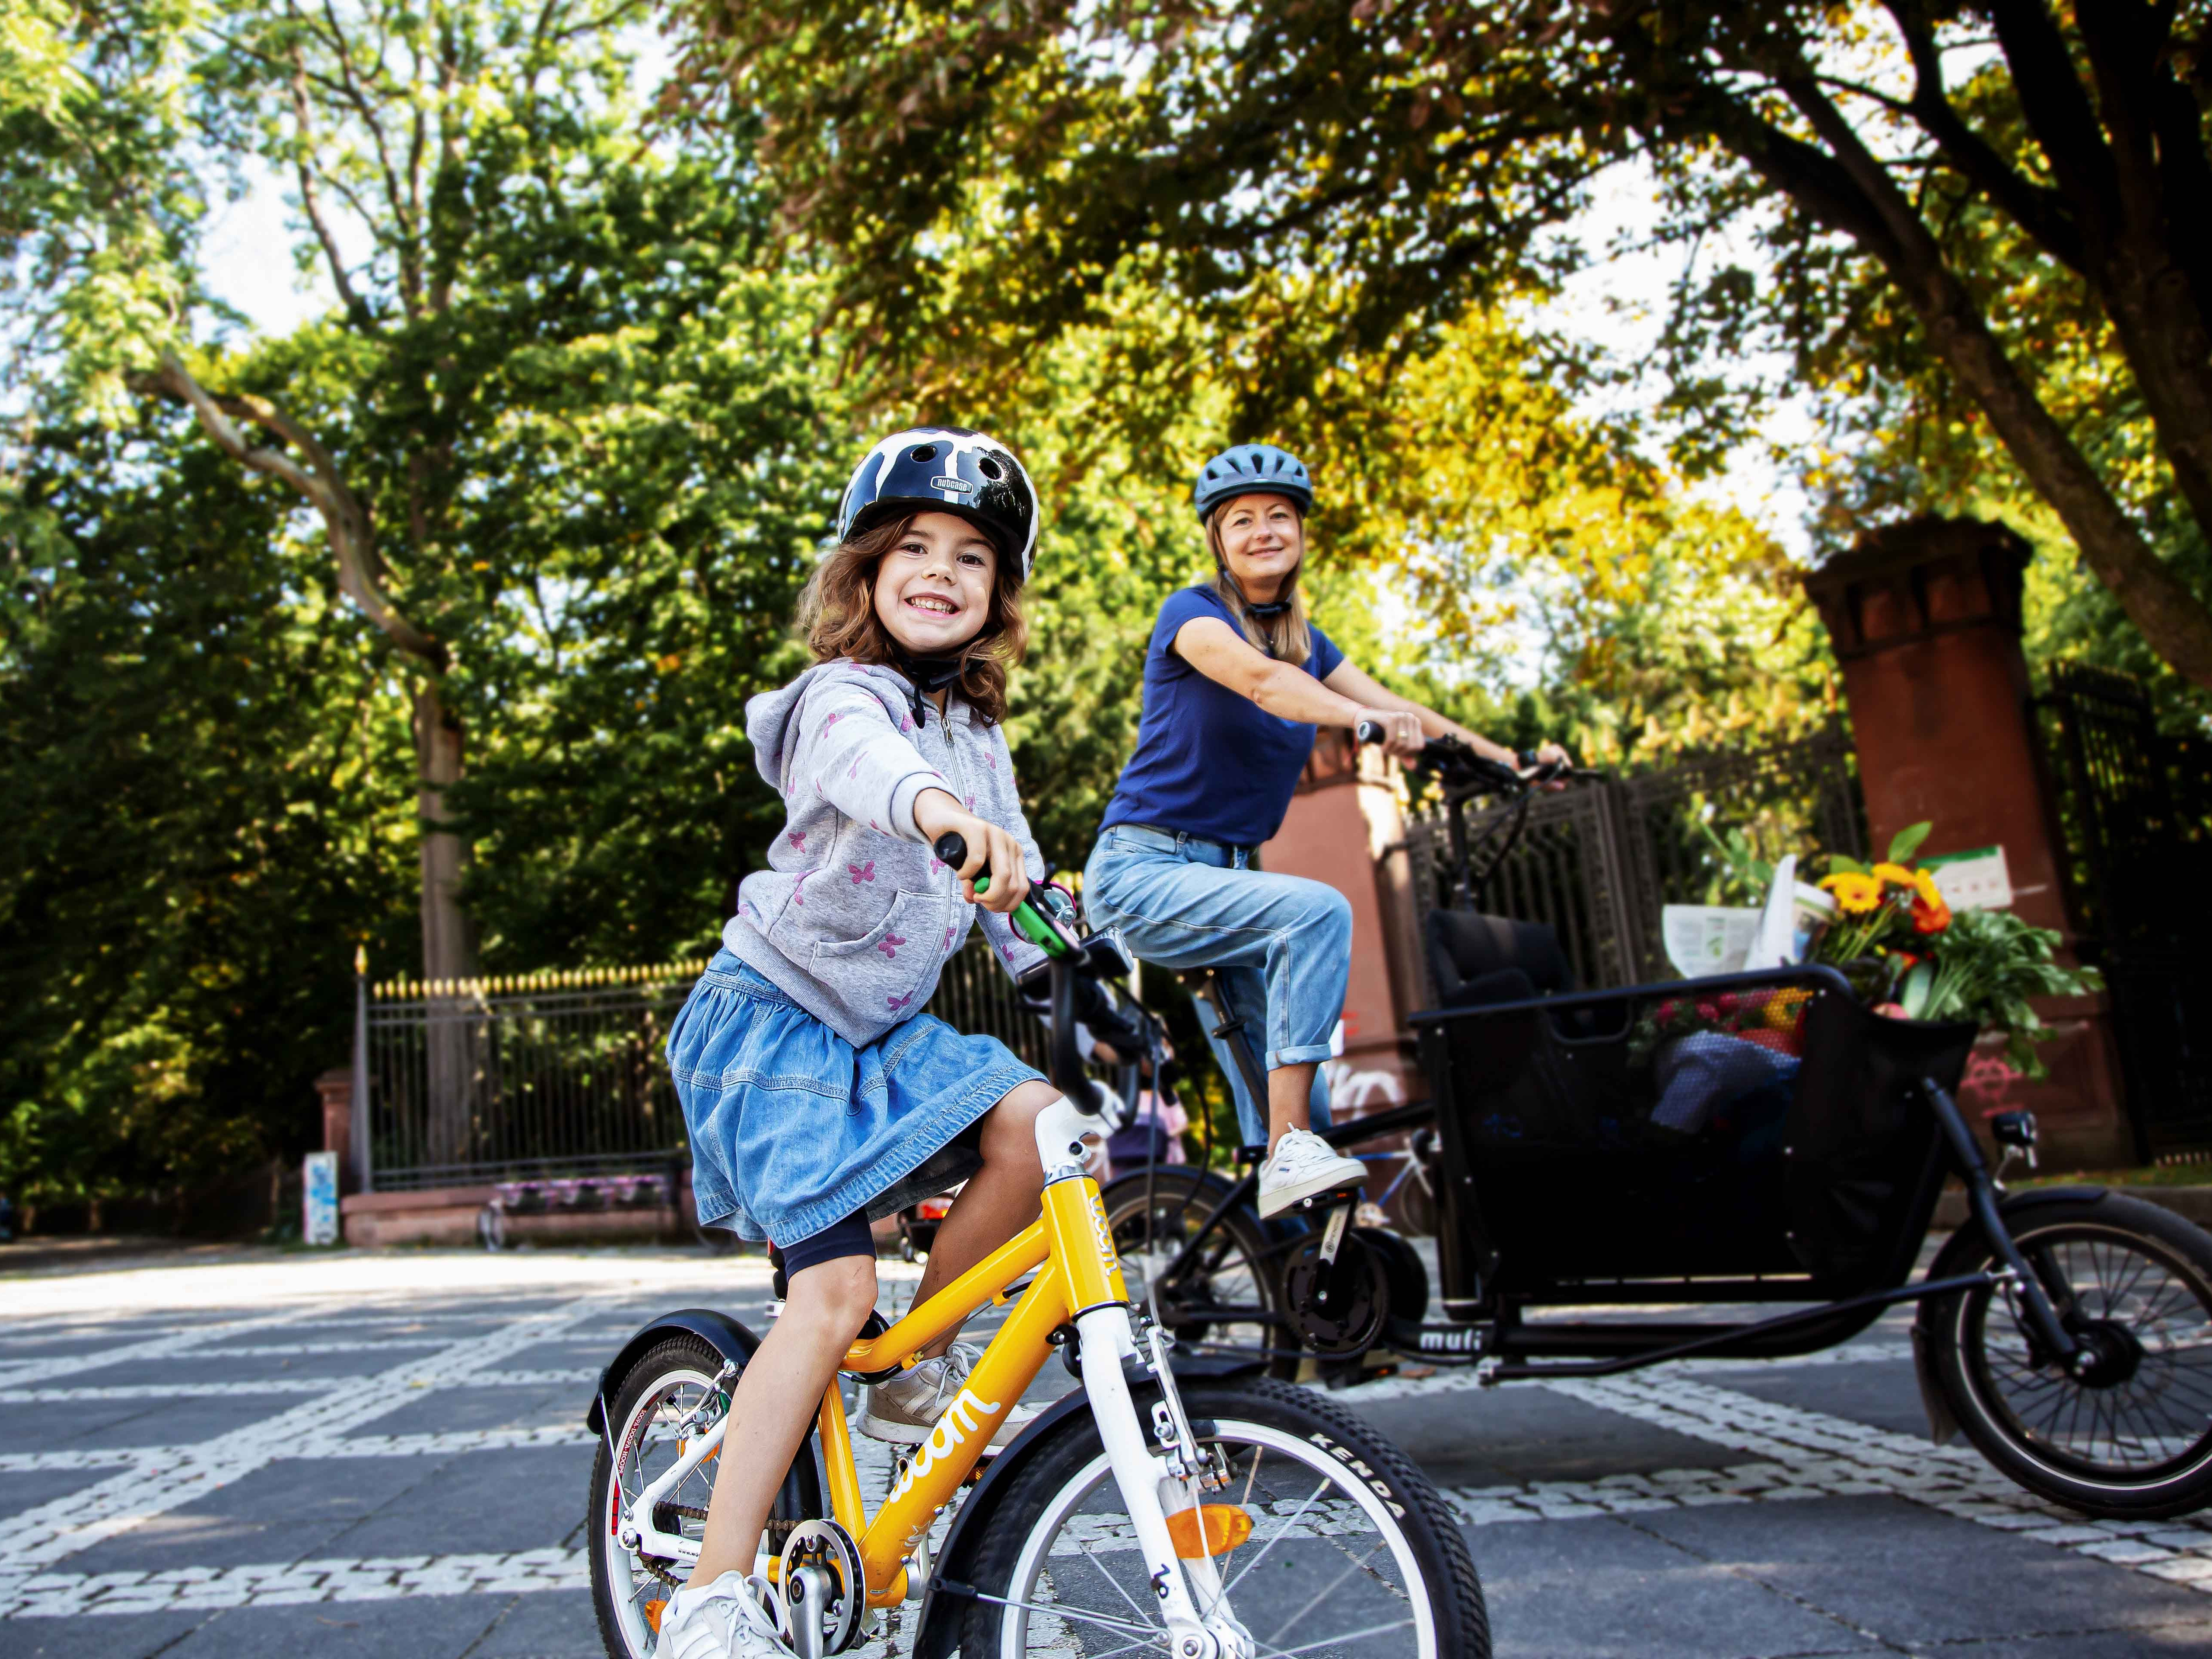 Frau mit Lastenbike und kleines Mädchen auf gelbem Fahrrad vor einem Park